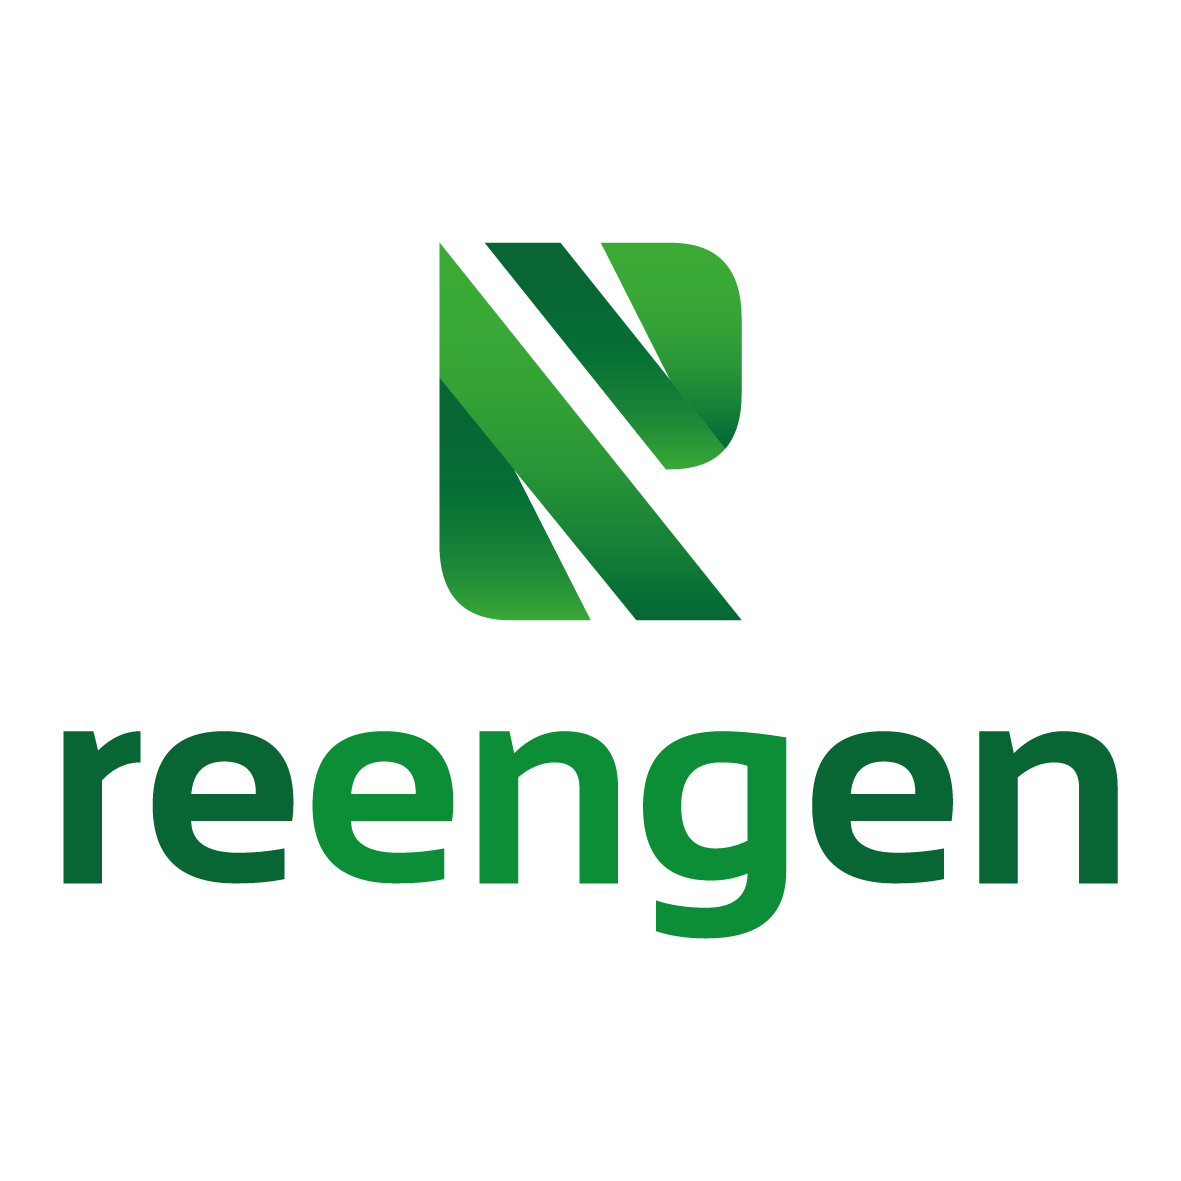 Reengen_logo.png